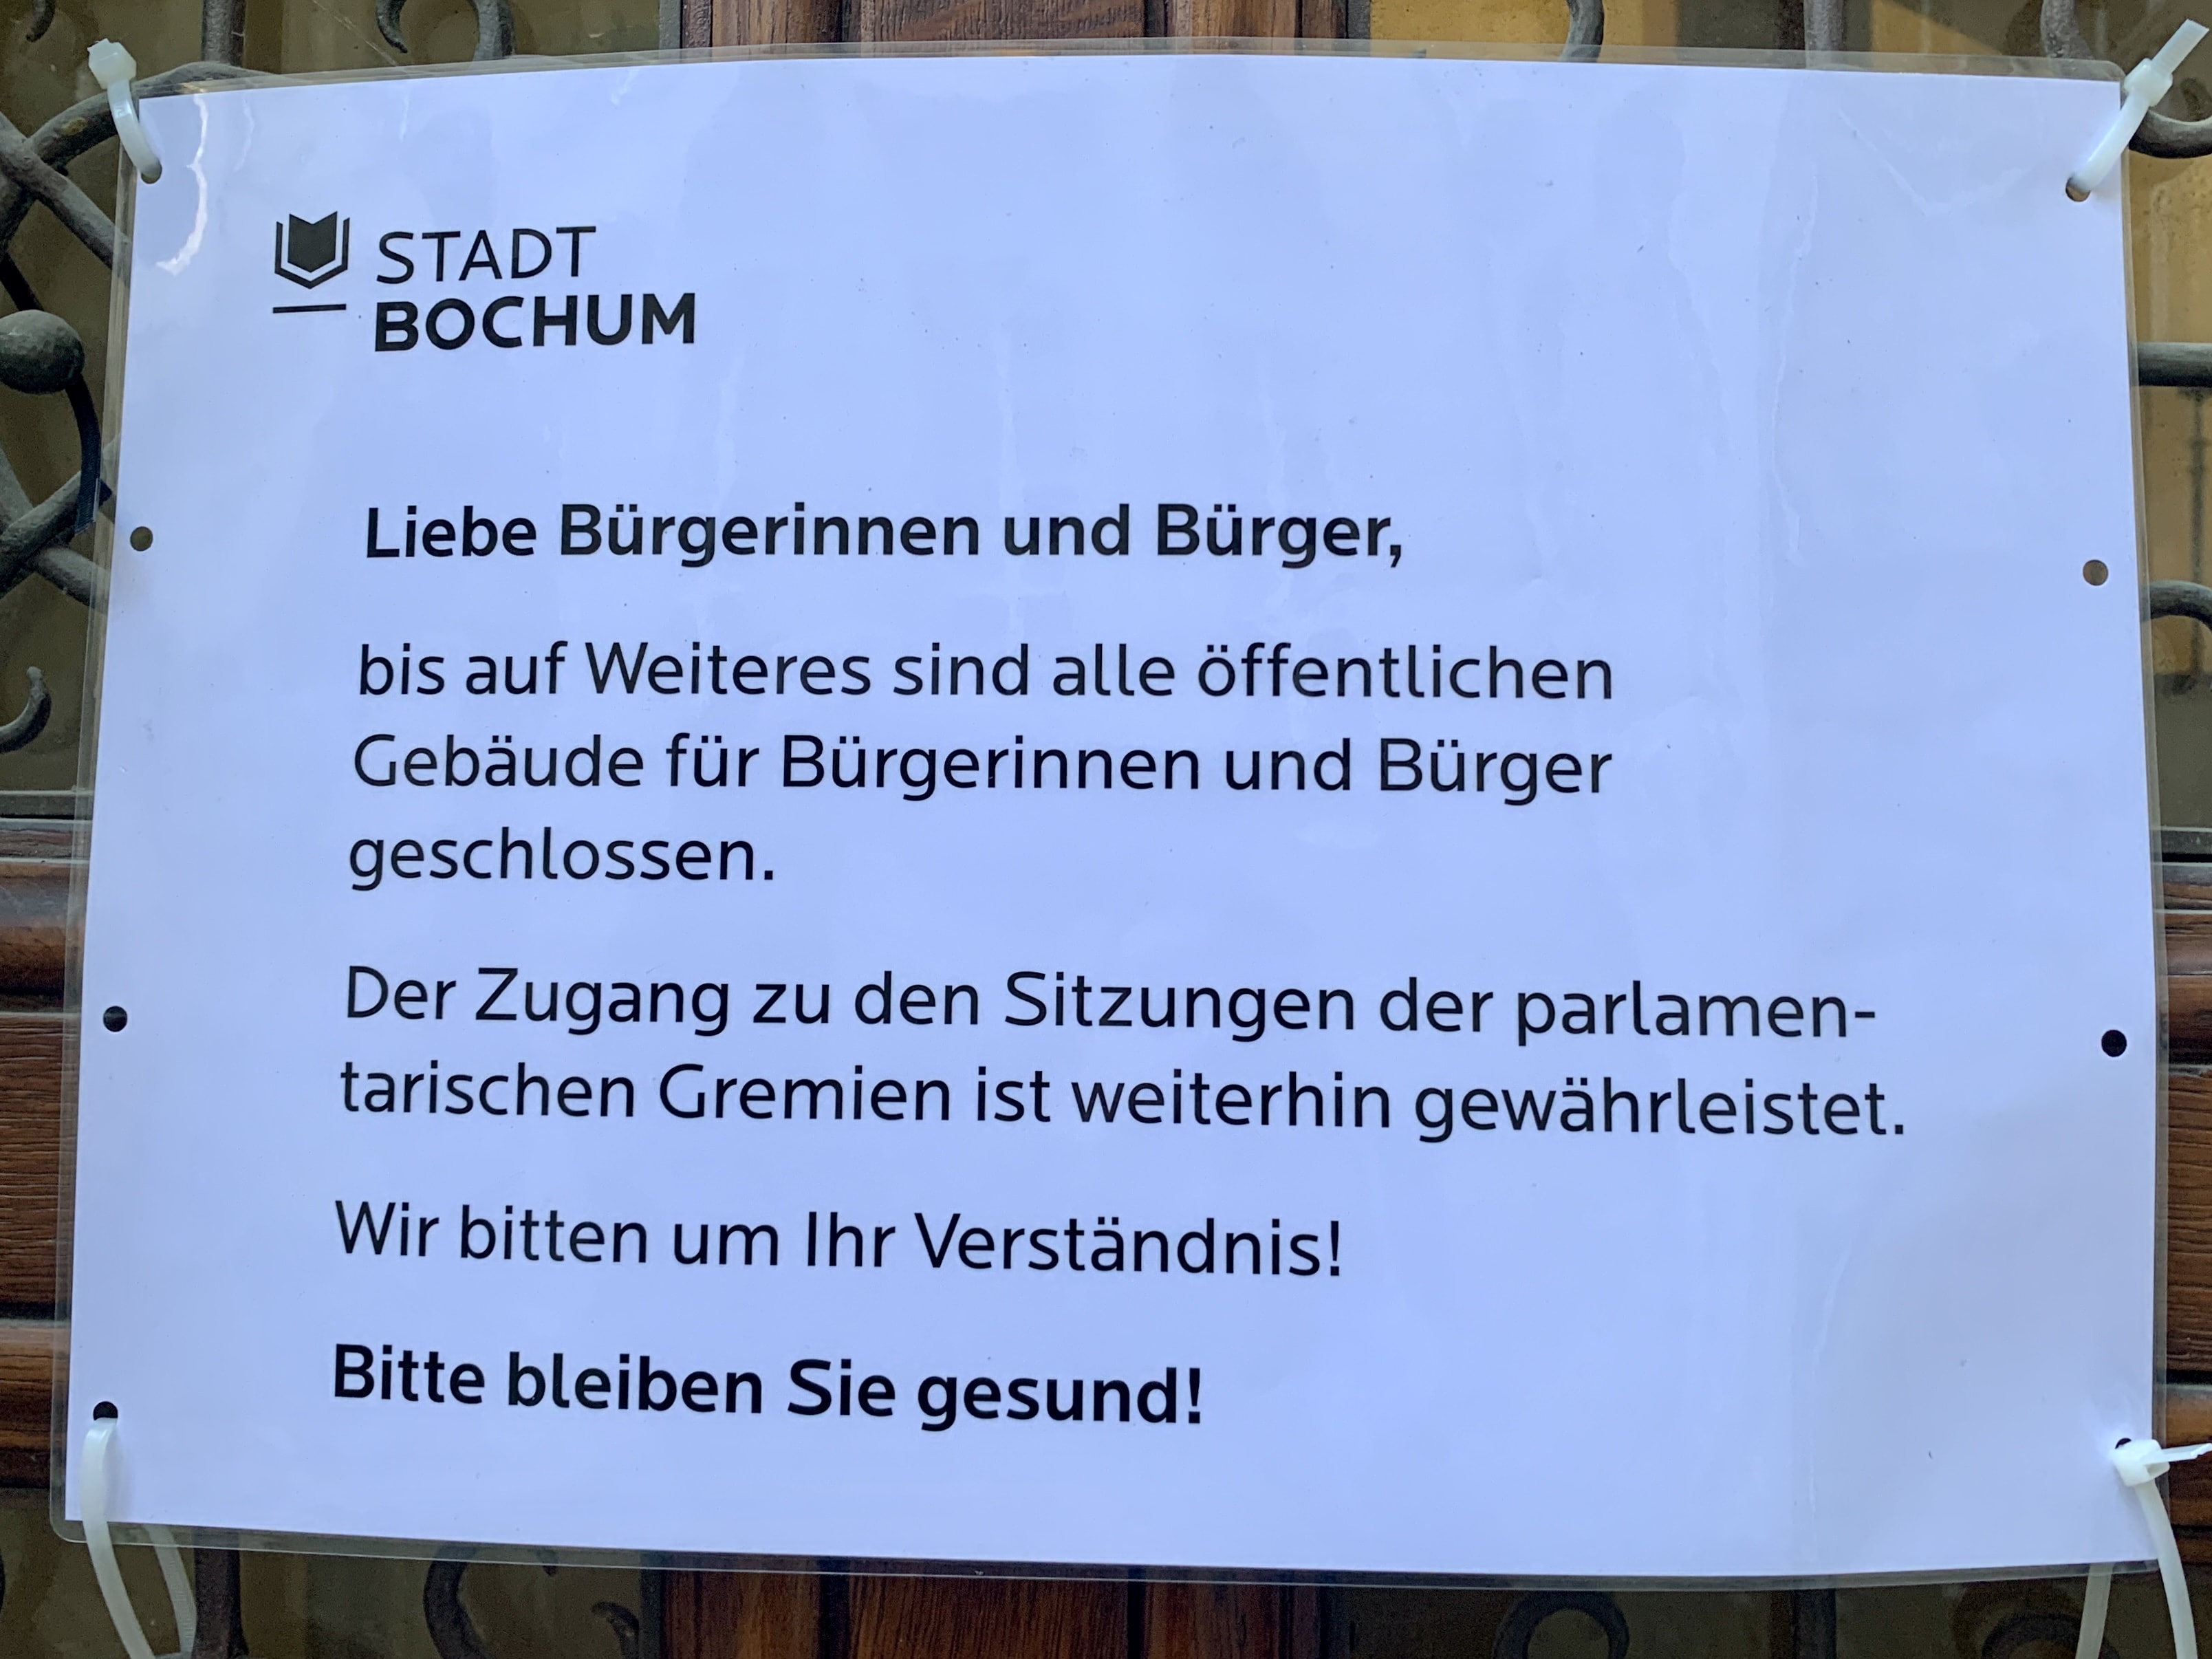 Öffentliche Gebäude in Bochum geschlossen: Zugang zu parlamentarischen Gremien weiterhin gewährleistet (Archivbild: März 2020)